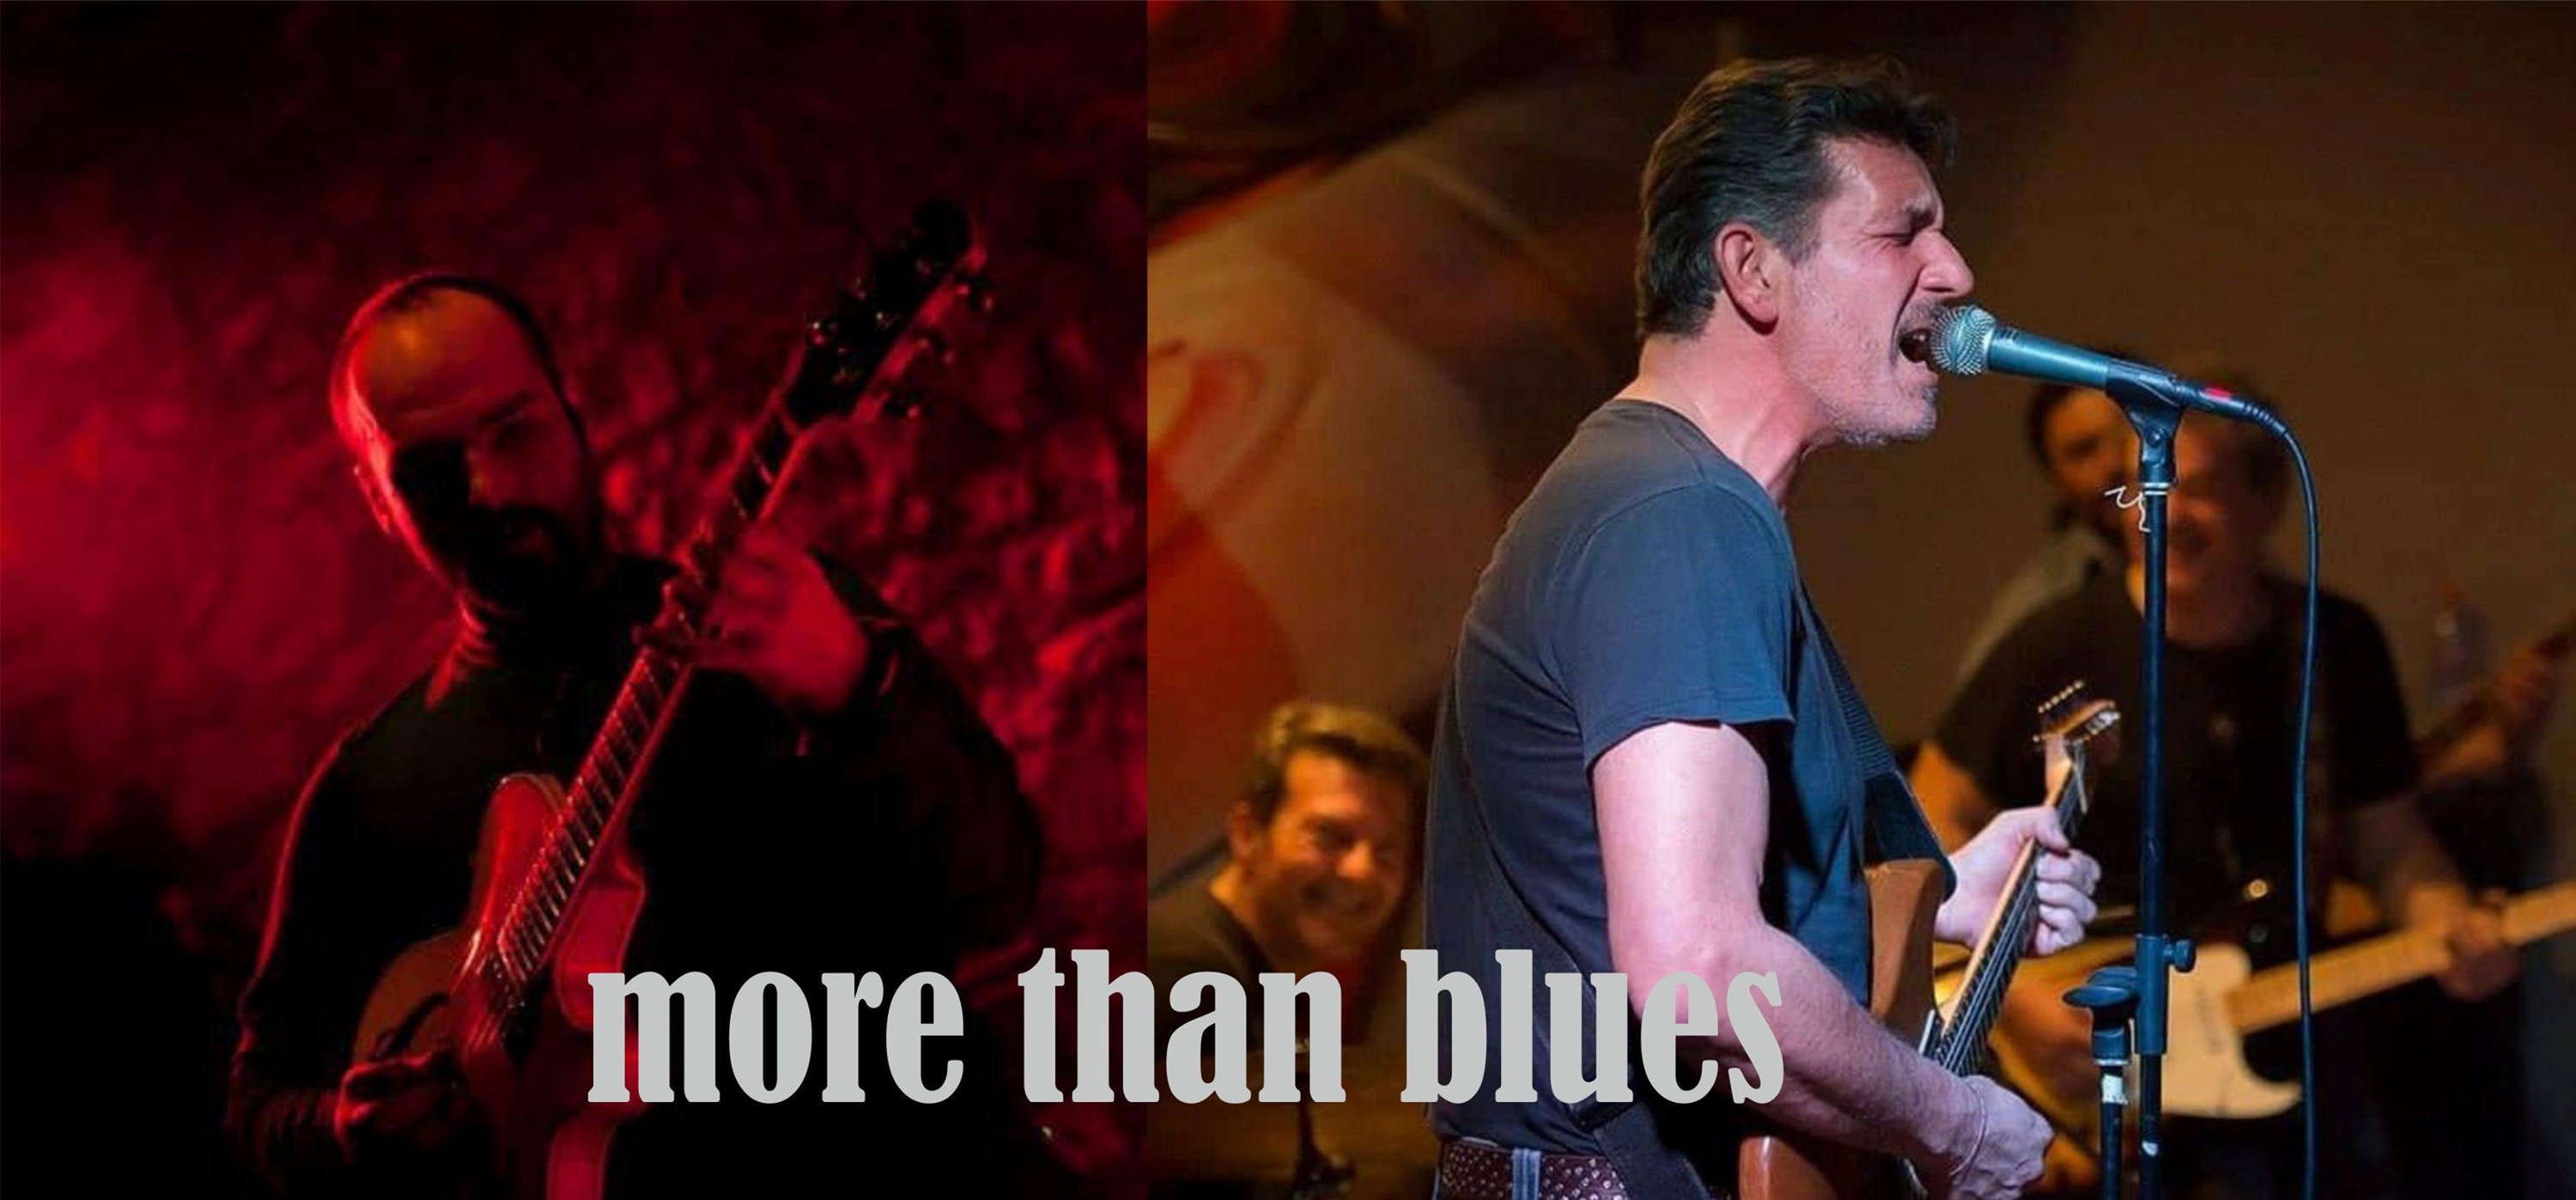 Οι More than blues ζωντανά το Σάββατο στο Χορίαμβο